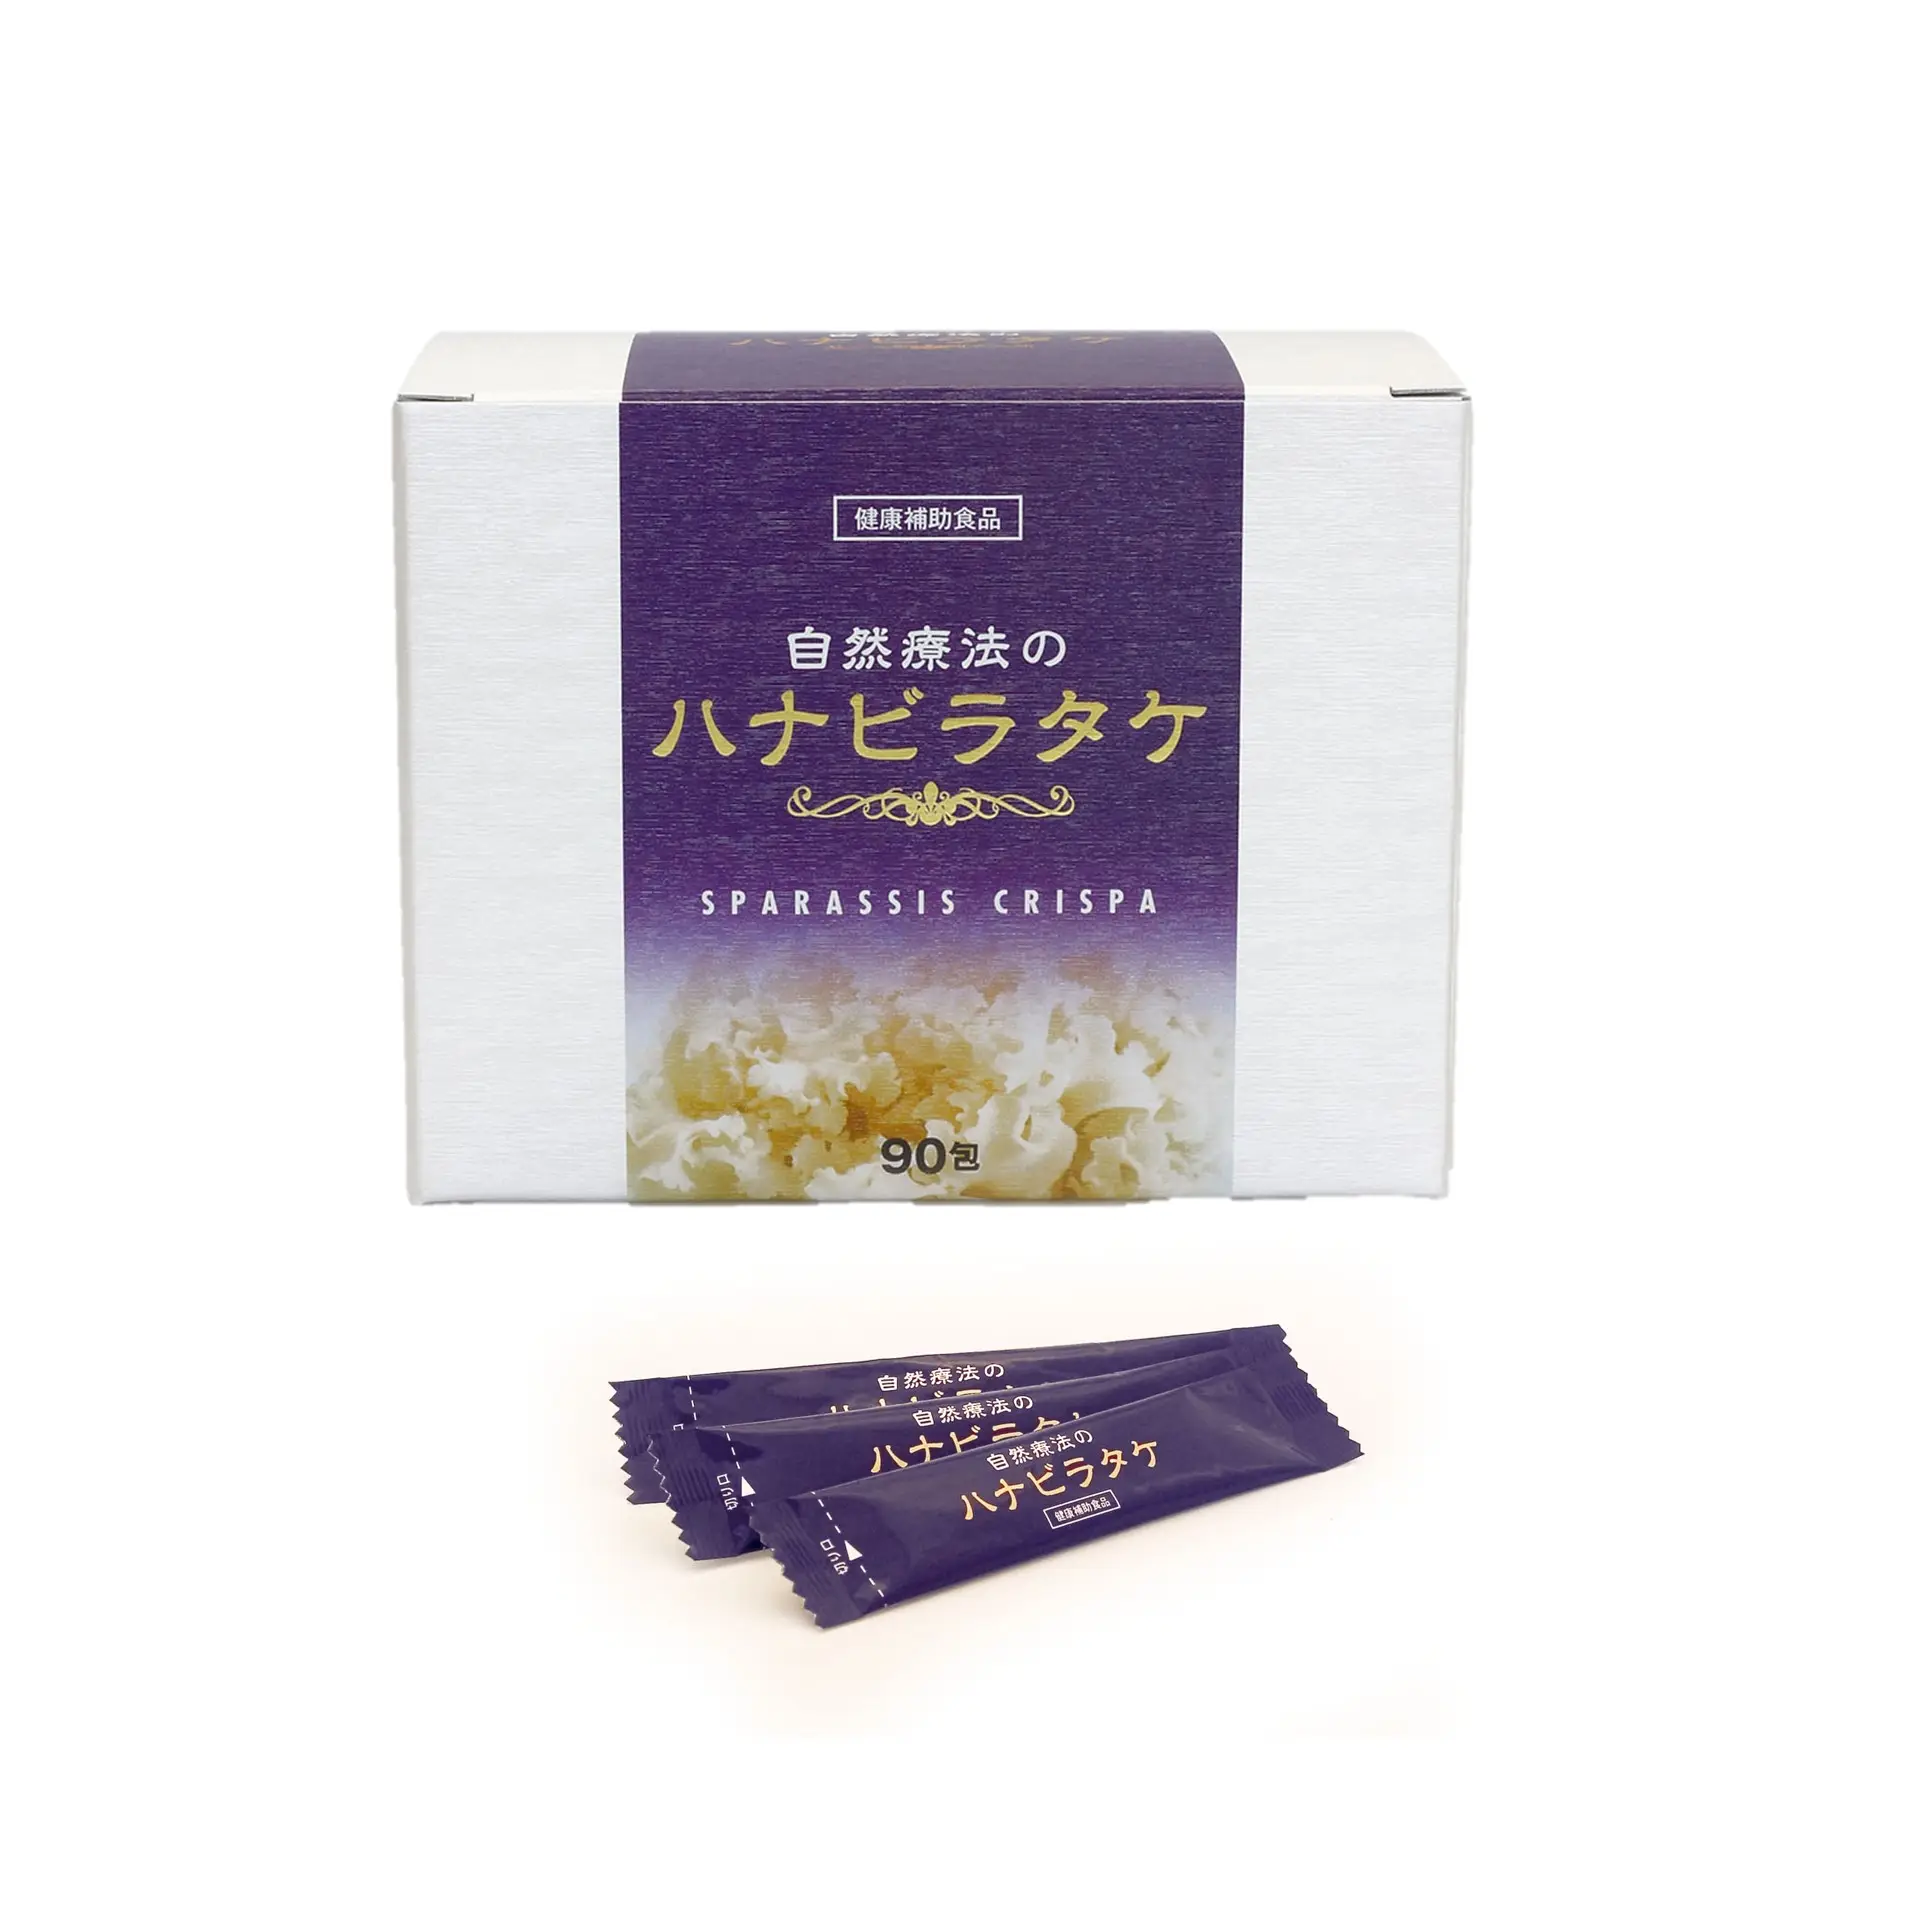 Supplément de soins de santé extrait de champignon en poudre de Hanabiratake plus varech (Konbu) fabriqué au japon